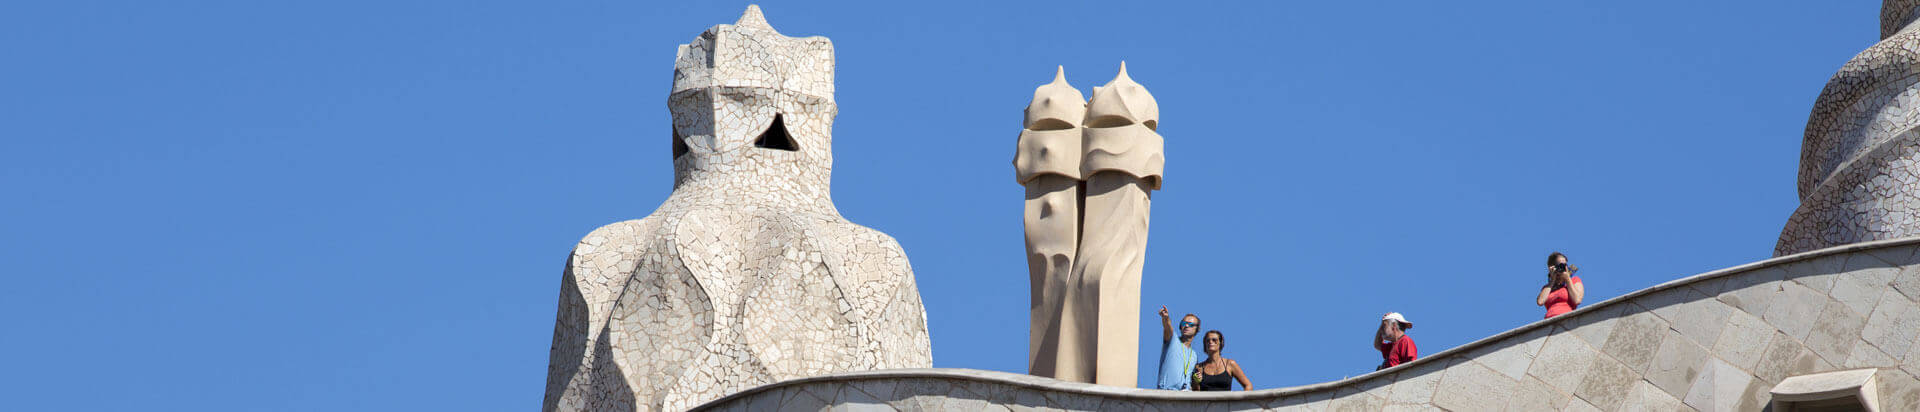 Actividades y exposiciones de La Pedrera (Casa Mila) de Gaudí en Barcelona